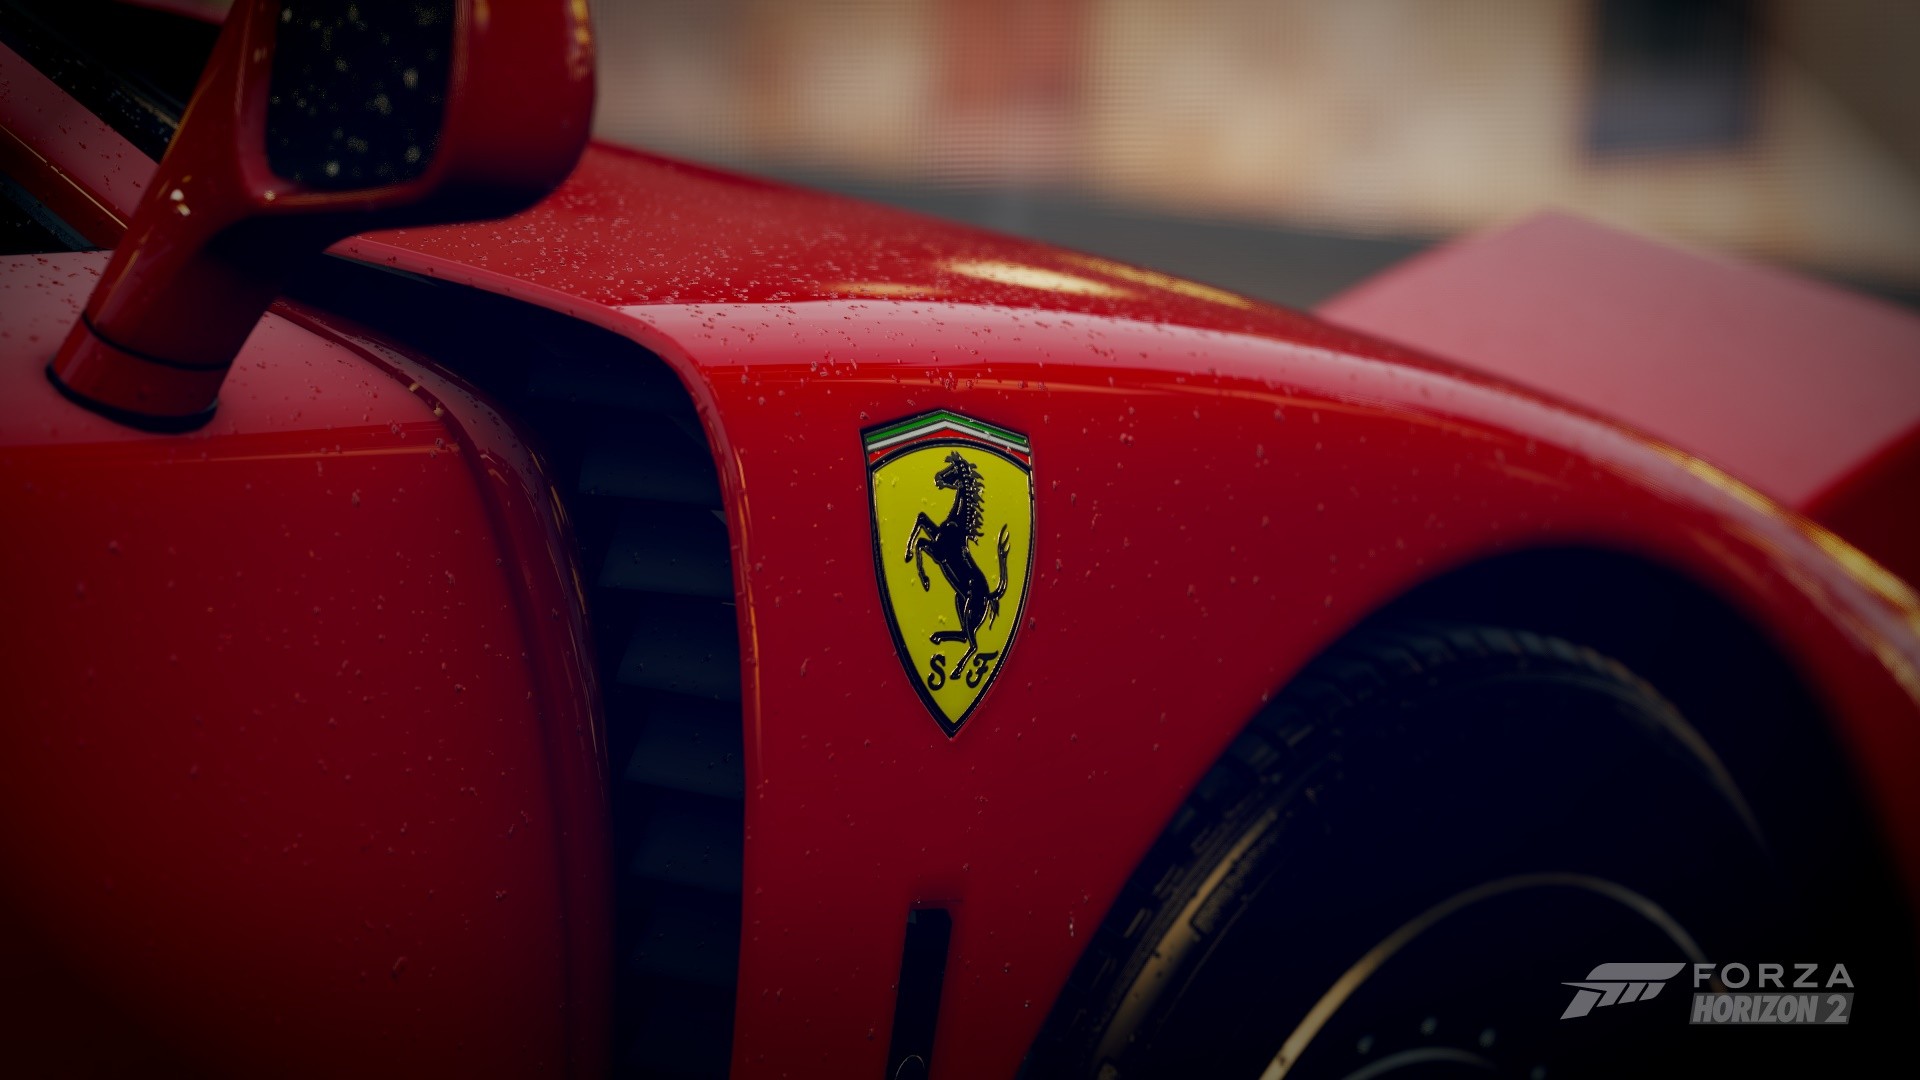 1920x1080-px-car-F40-Ferrari-Ferrari-F40-Forza-Horizon-2-745160-wallhere.com.jpg